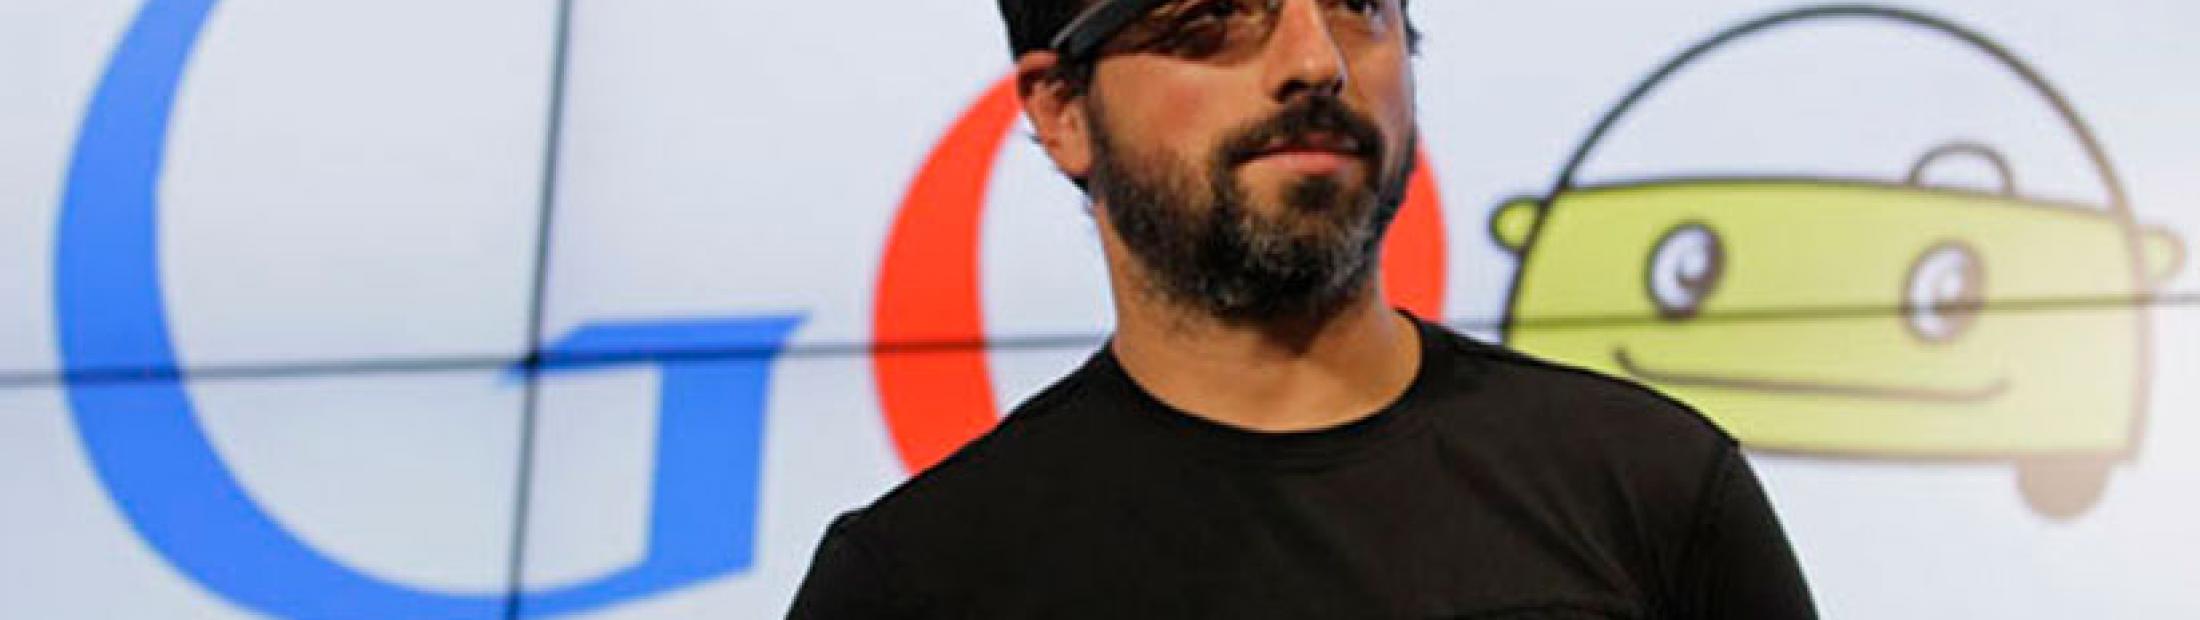 Refugiados famosos: Sergey Brin, cofundador de Google